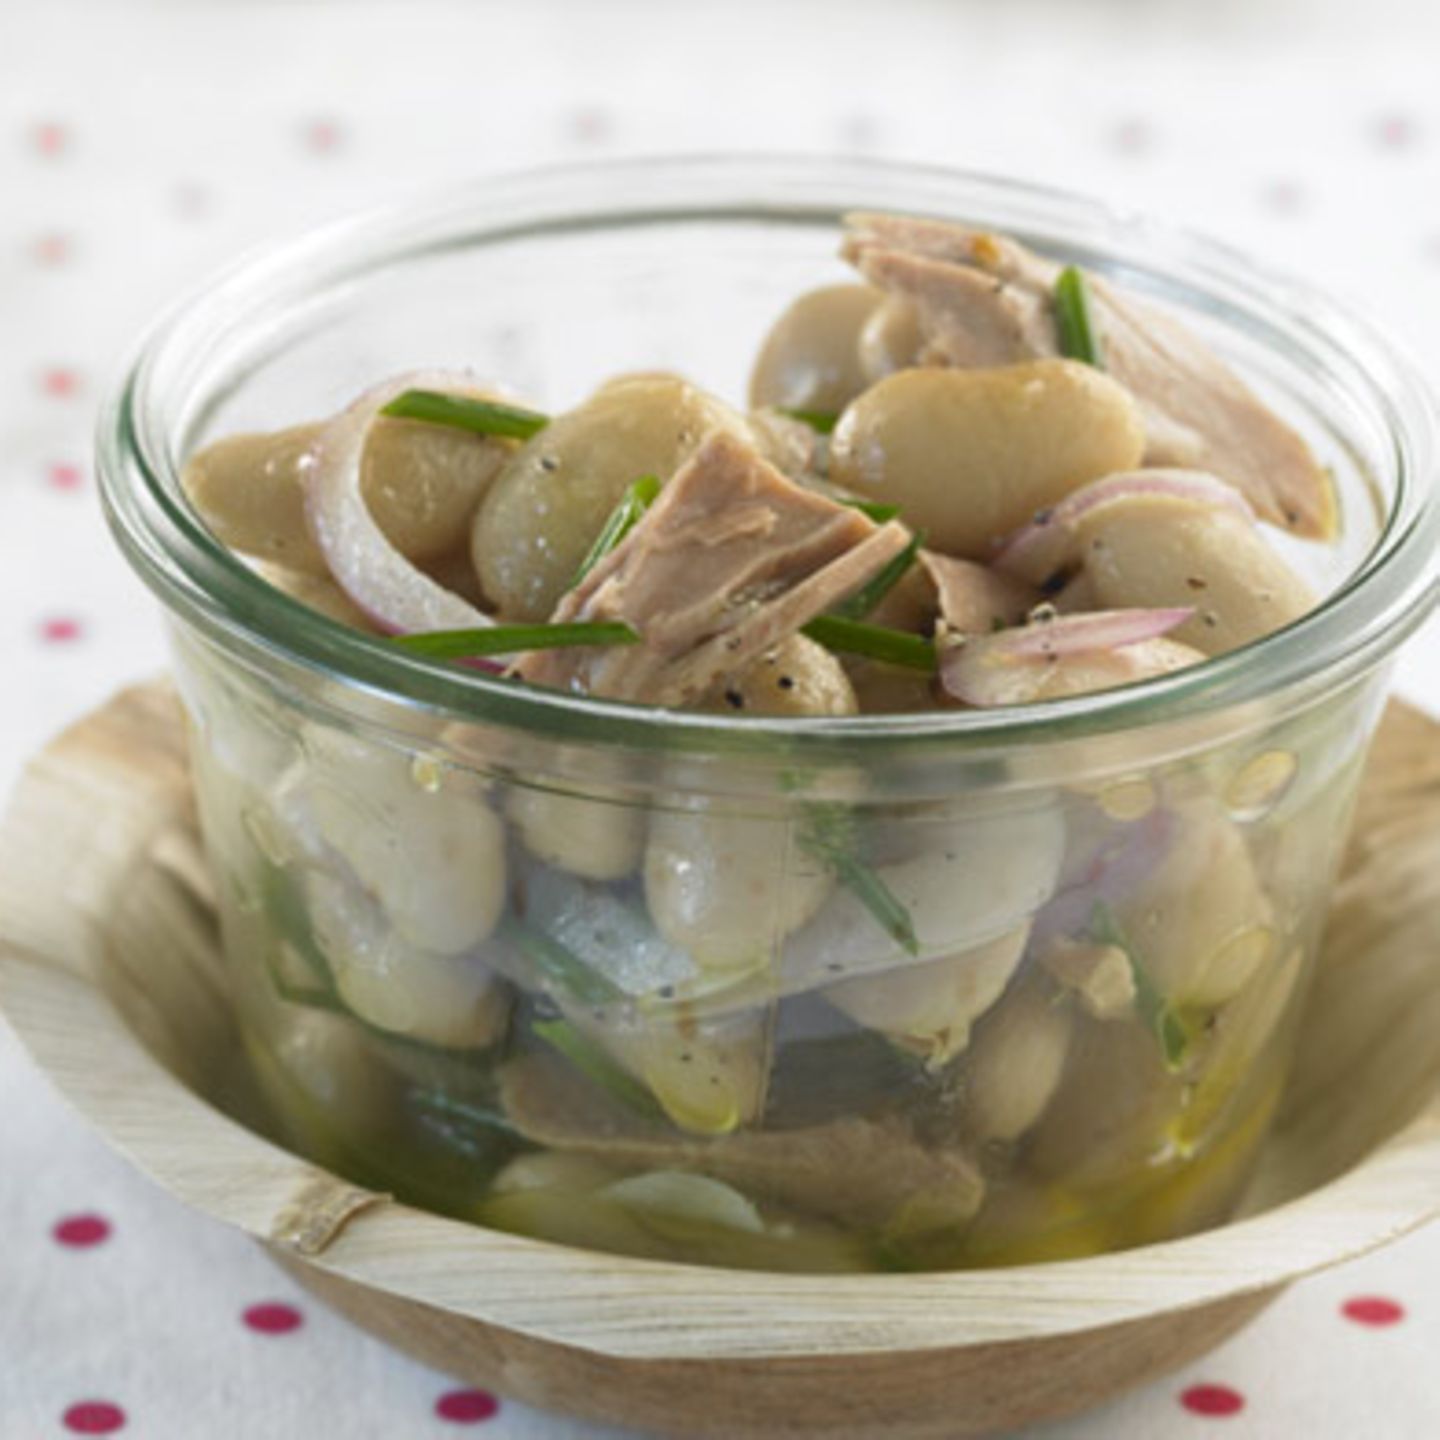 Bohnen-Thunfisch-Salat